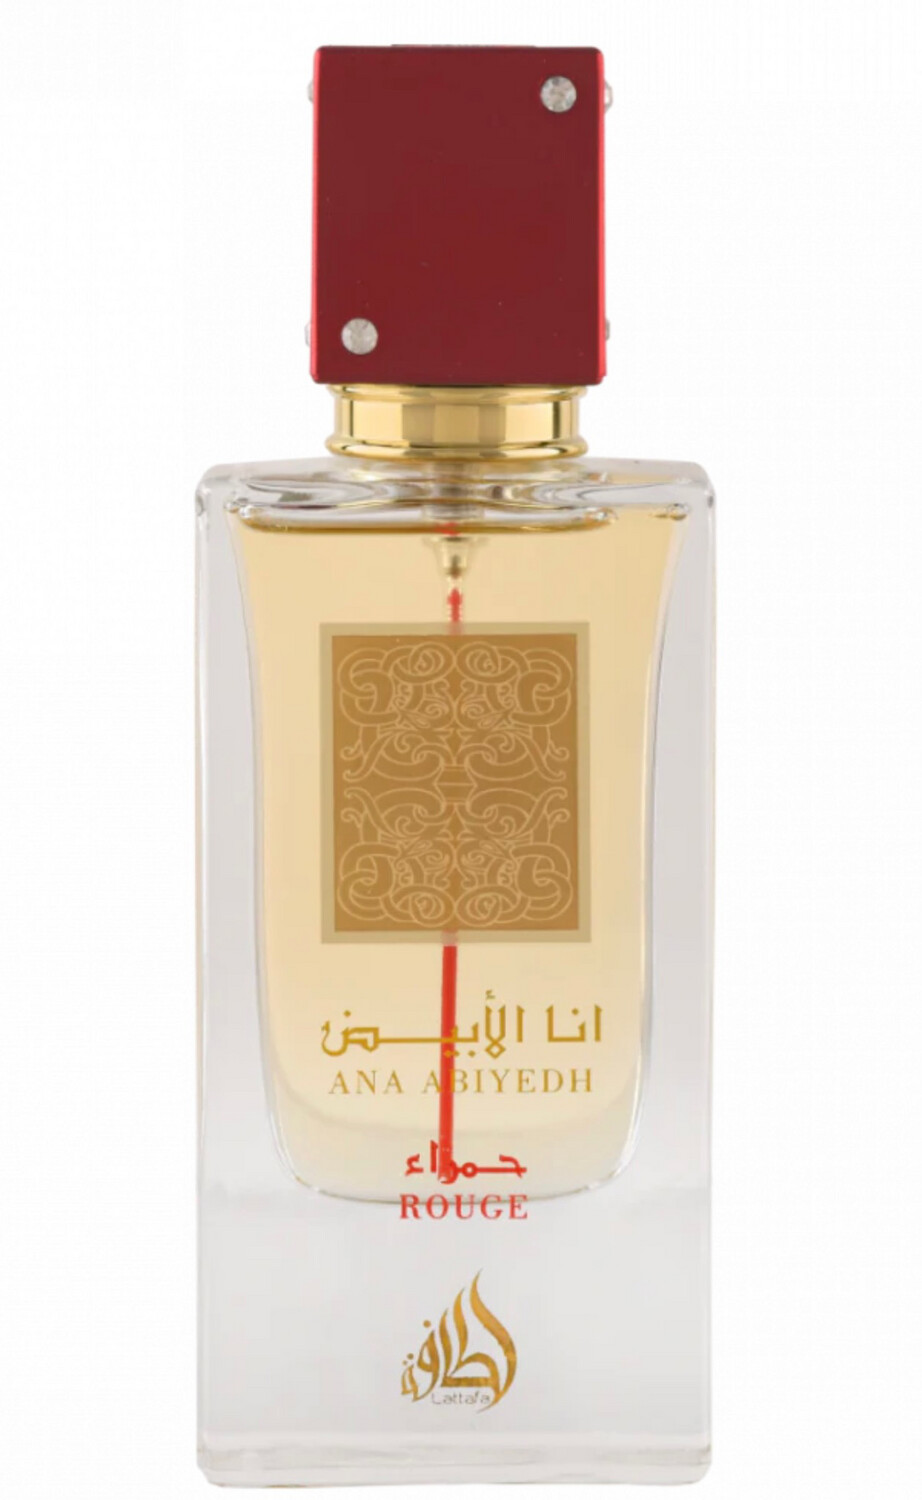 Ana Abiyedh Rouge - aroma fresco y especiado con matices cítricos y dulces, seguidos de una base amaderada y musgosa.